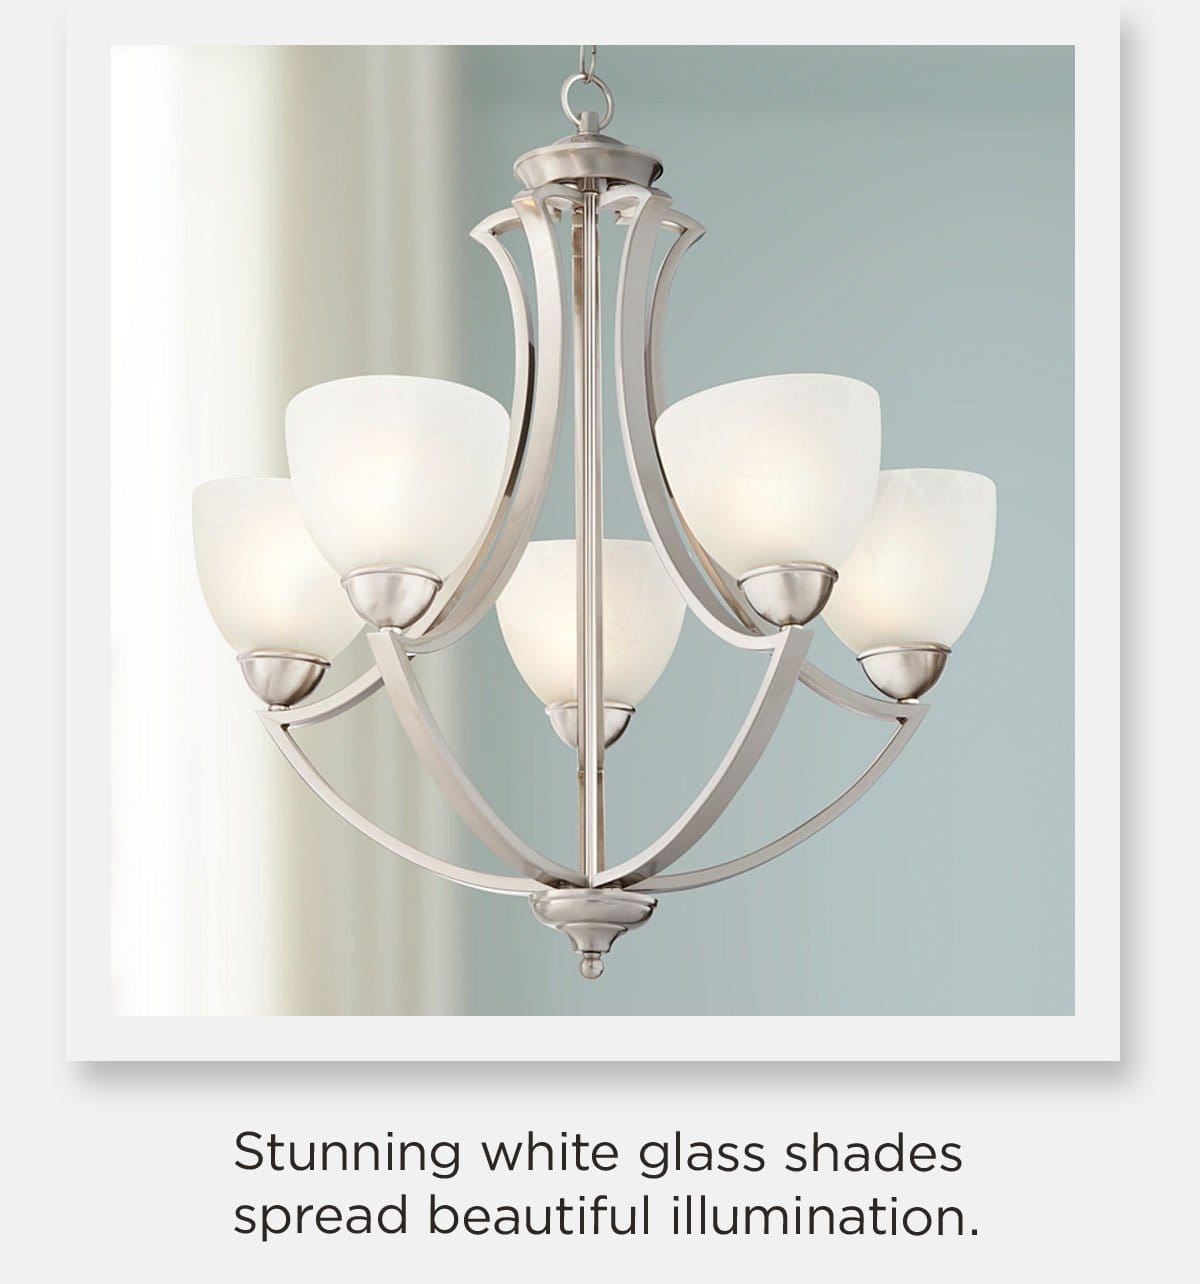 Stunning white glass shades spread beautiful illumination.